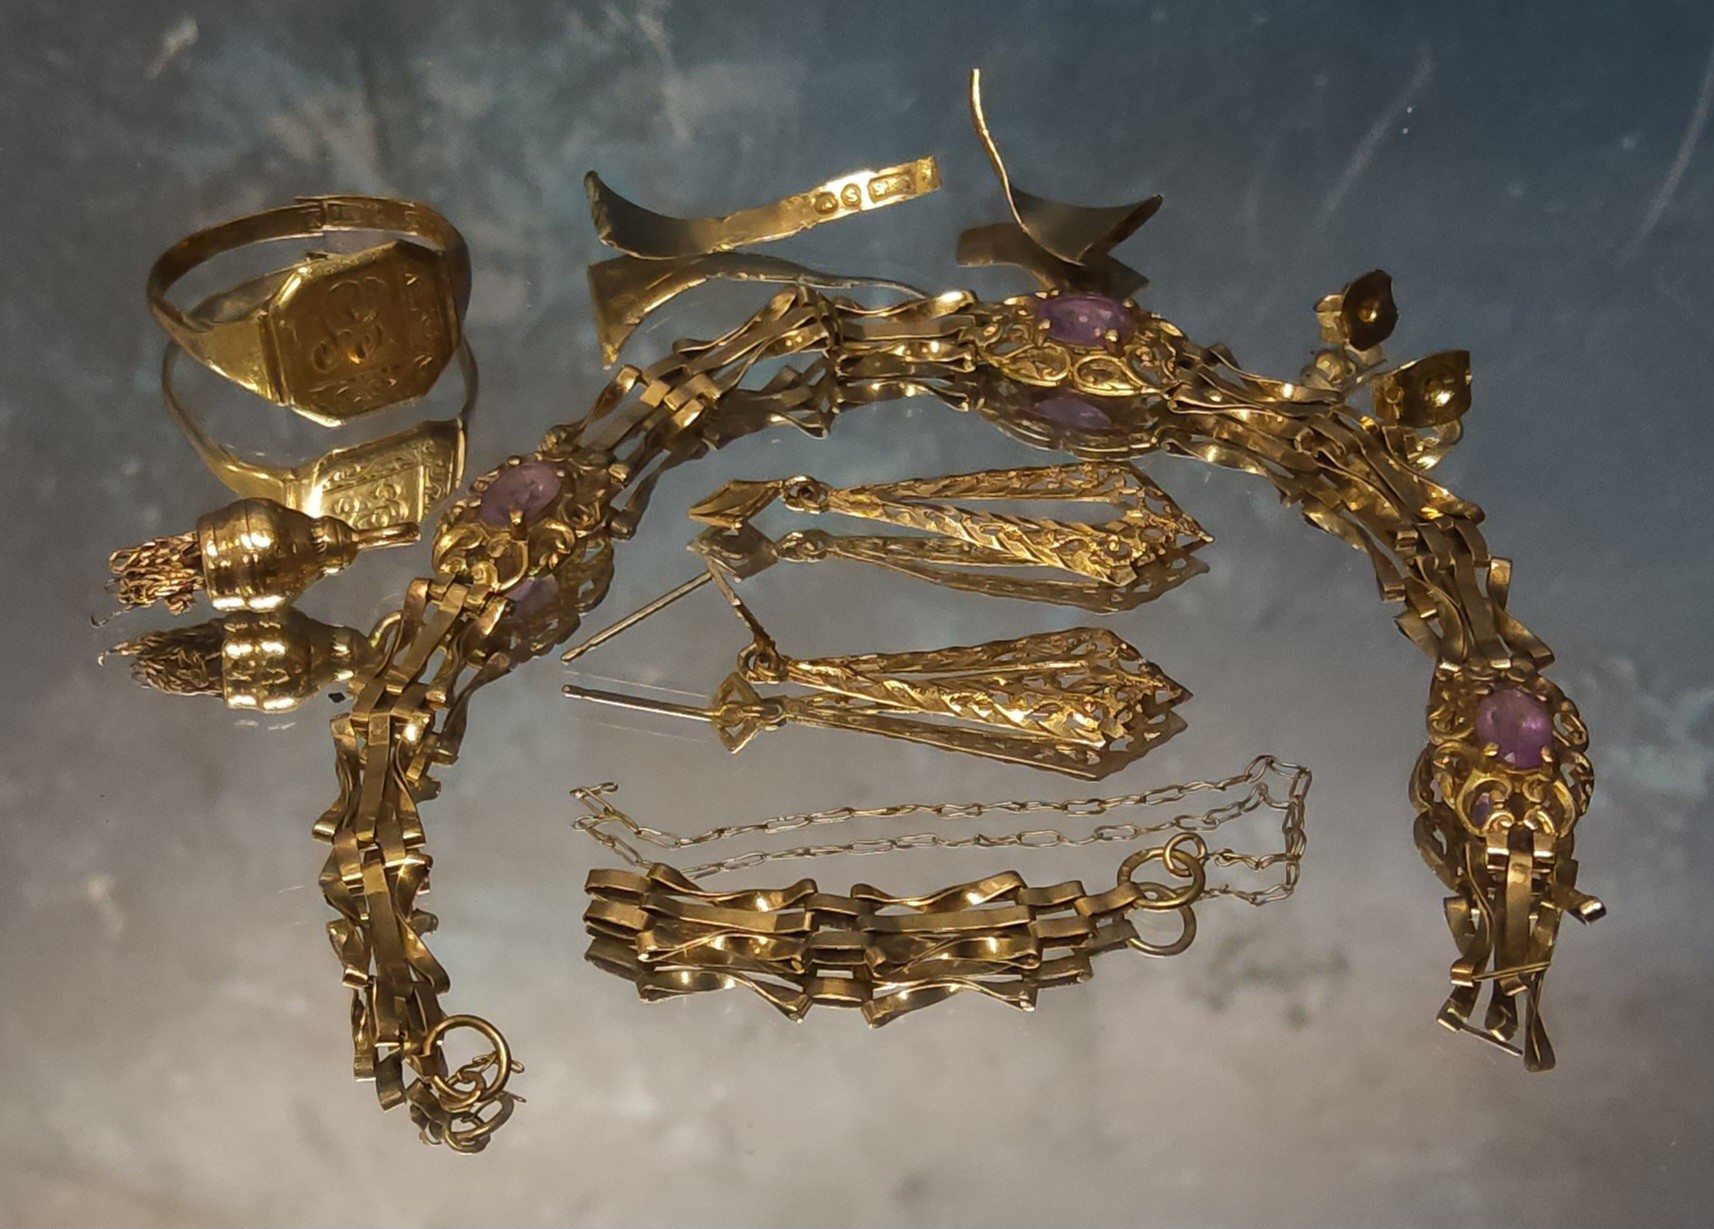 A 9ct gold & amethyst bracelet (broken), 4.78g gross; a 9ct gold signet ring, cut, size Q, 1.86g;